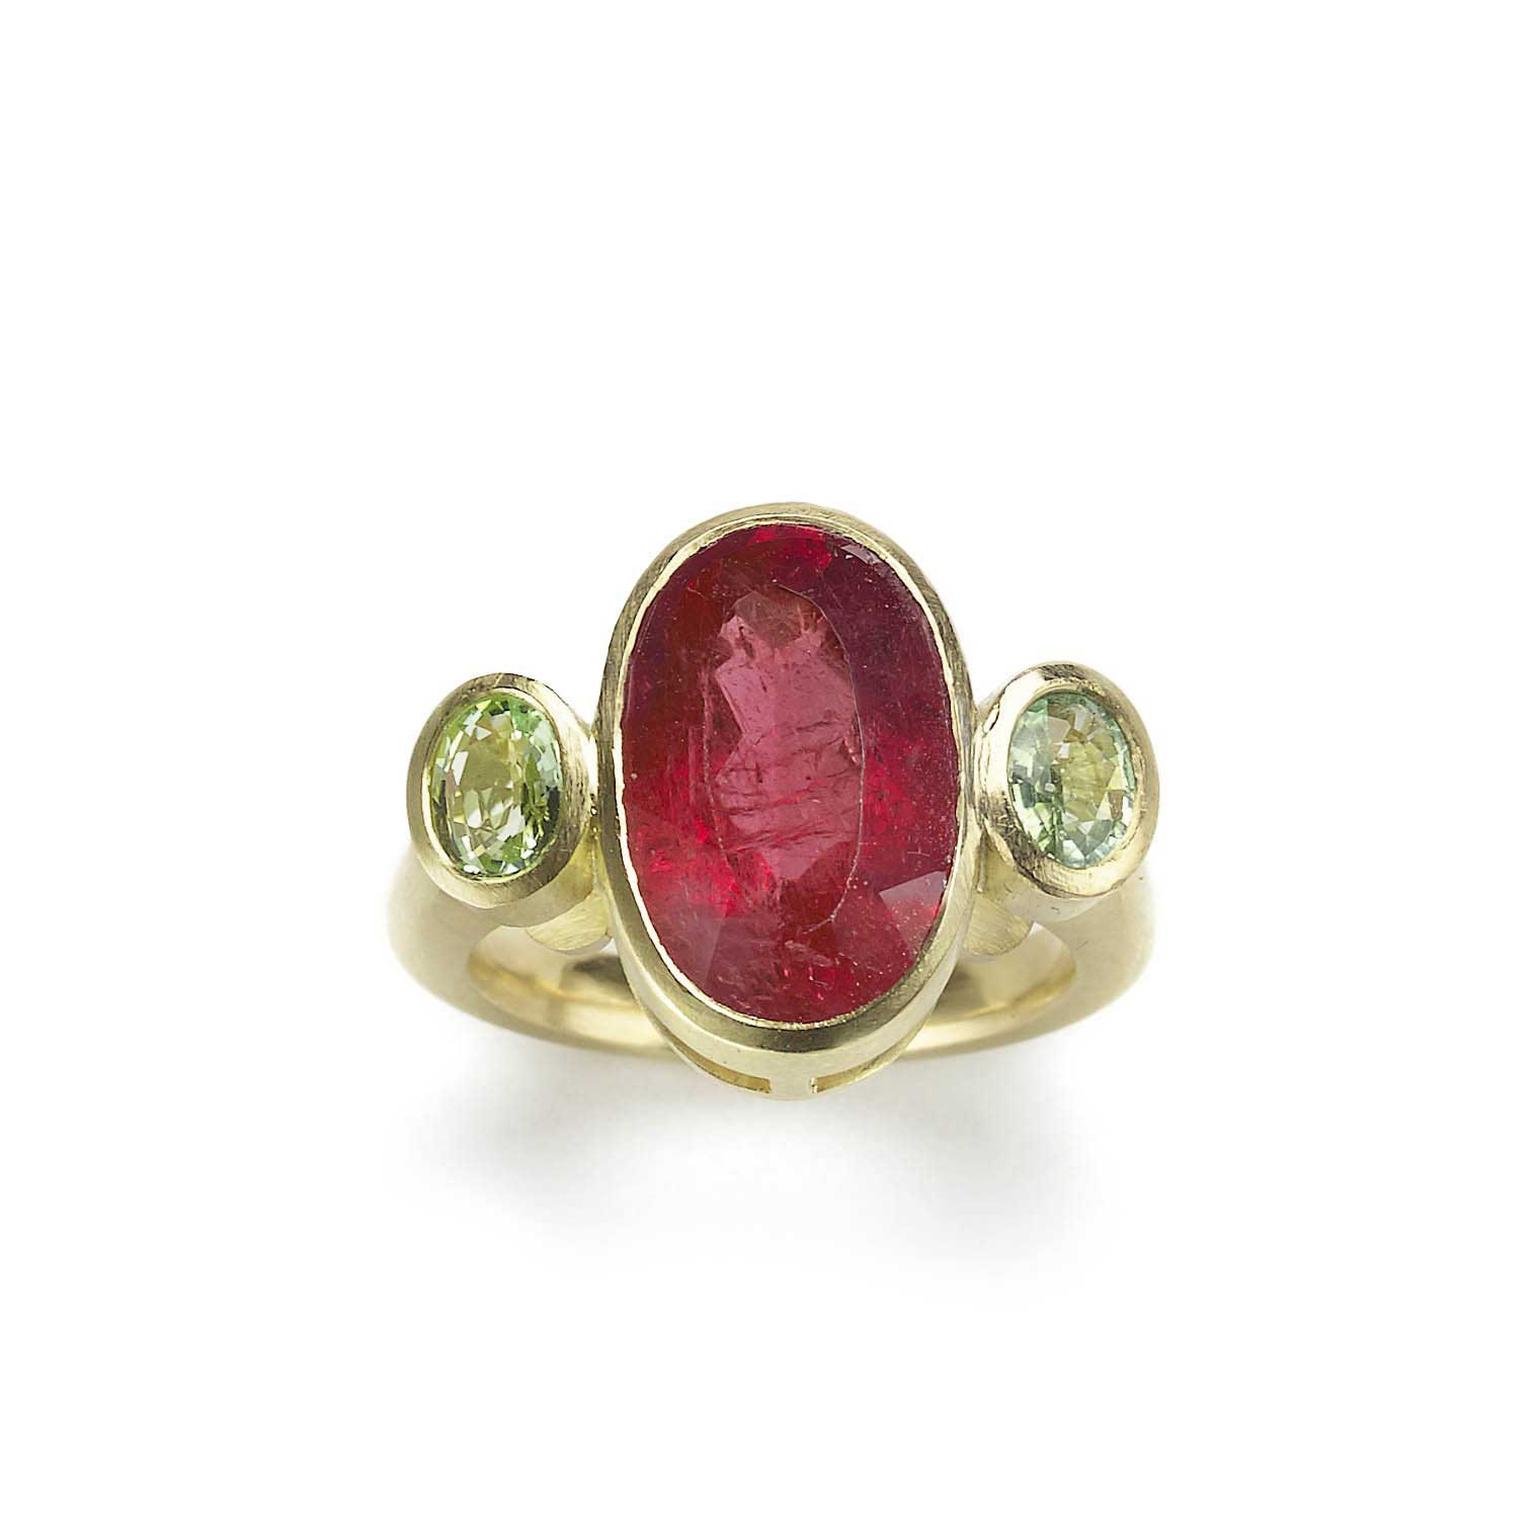 Julia Lloyd George rhodolite garnet ring